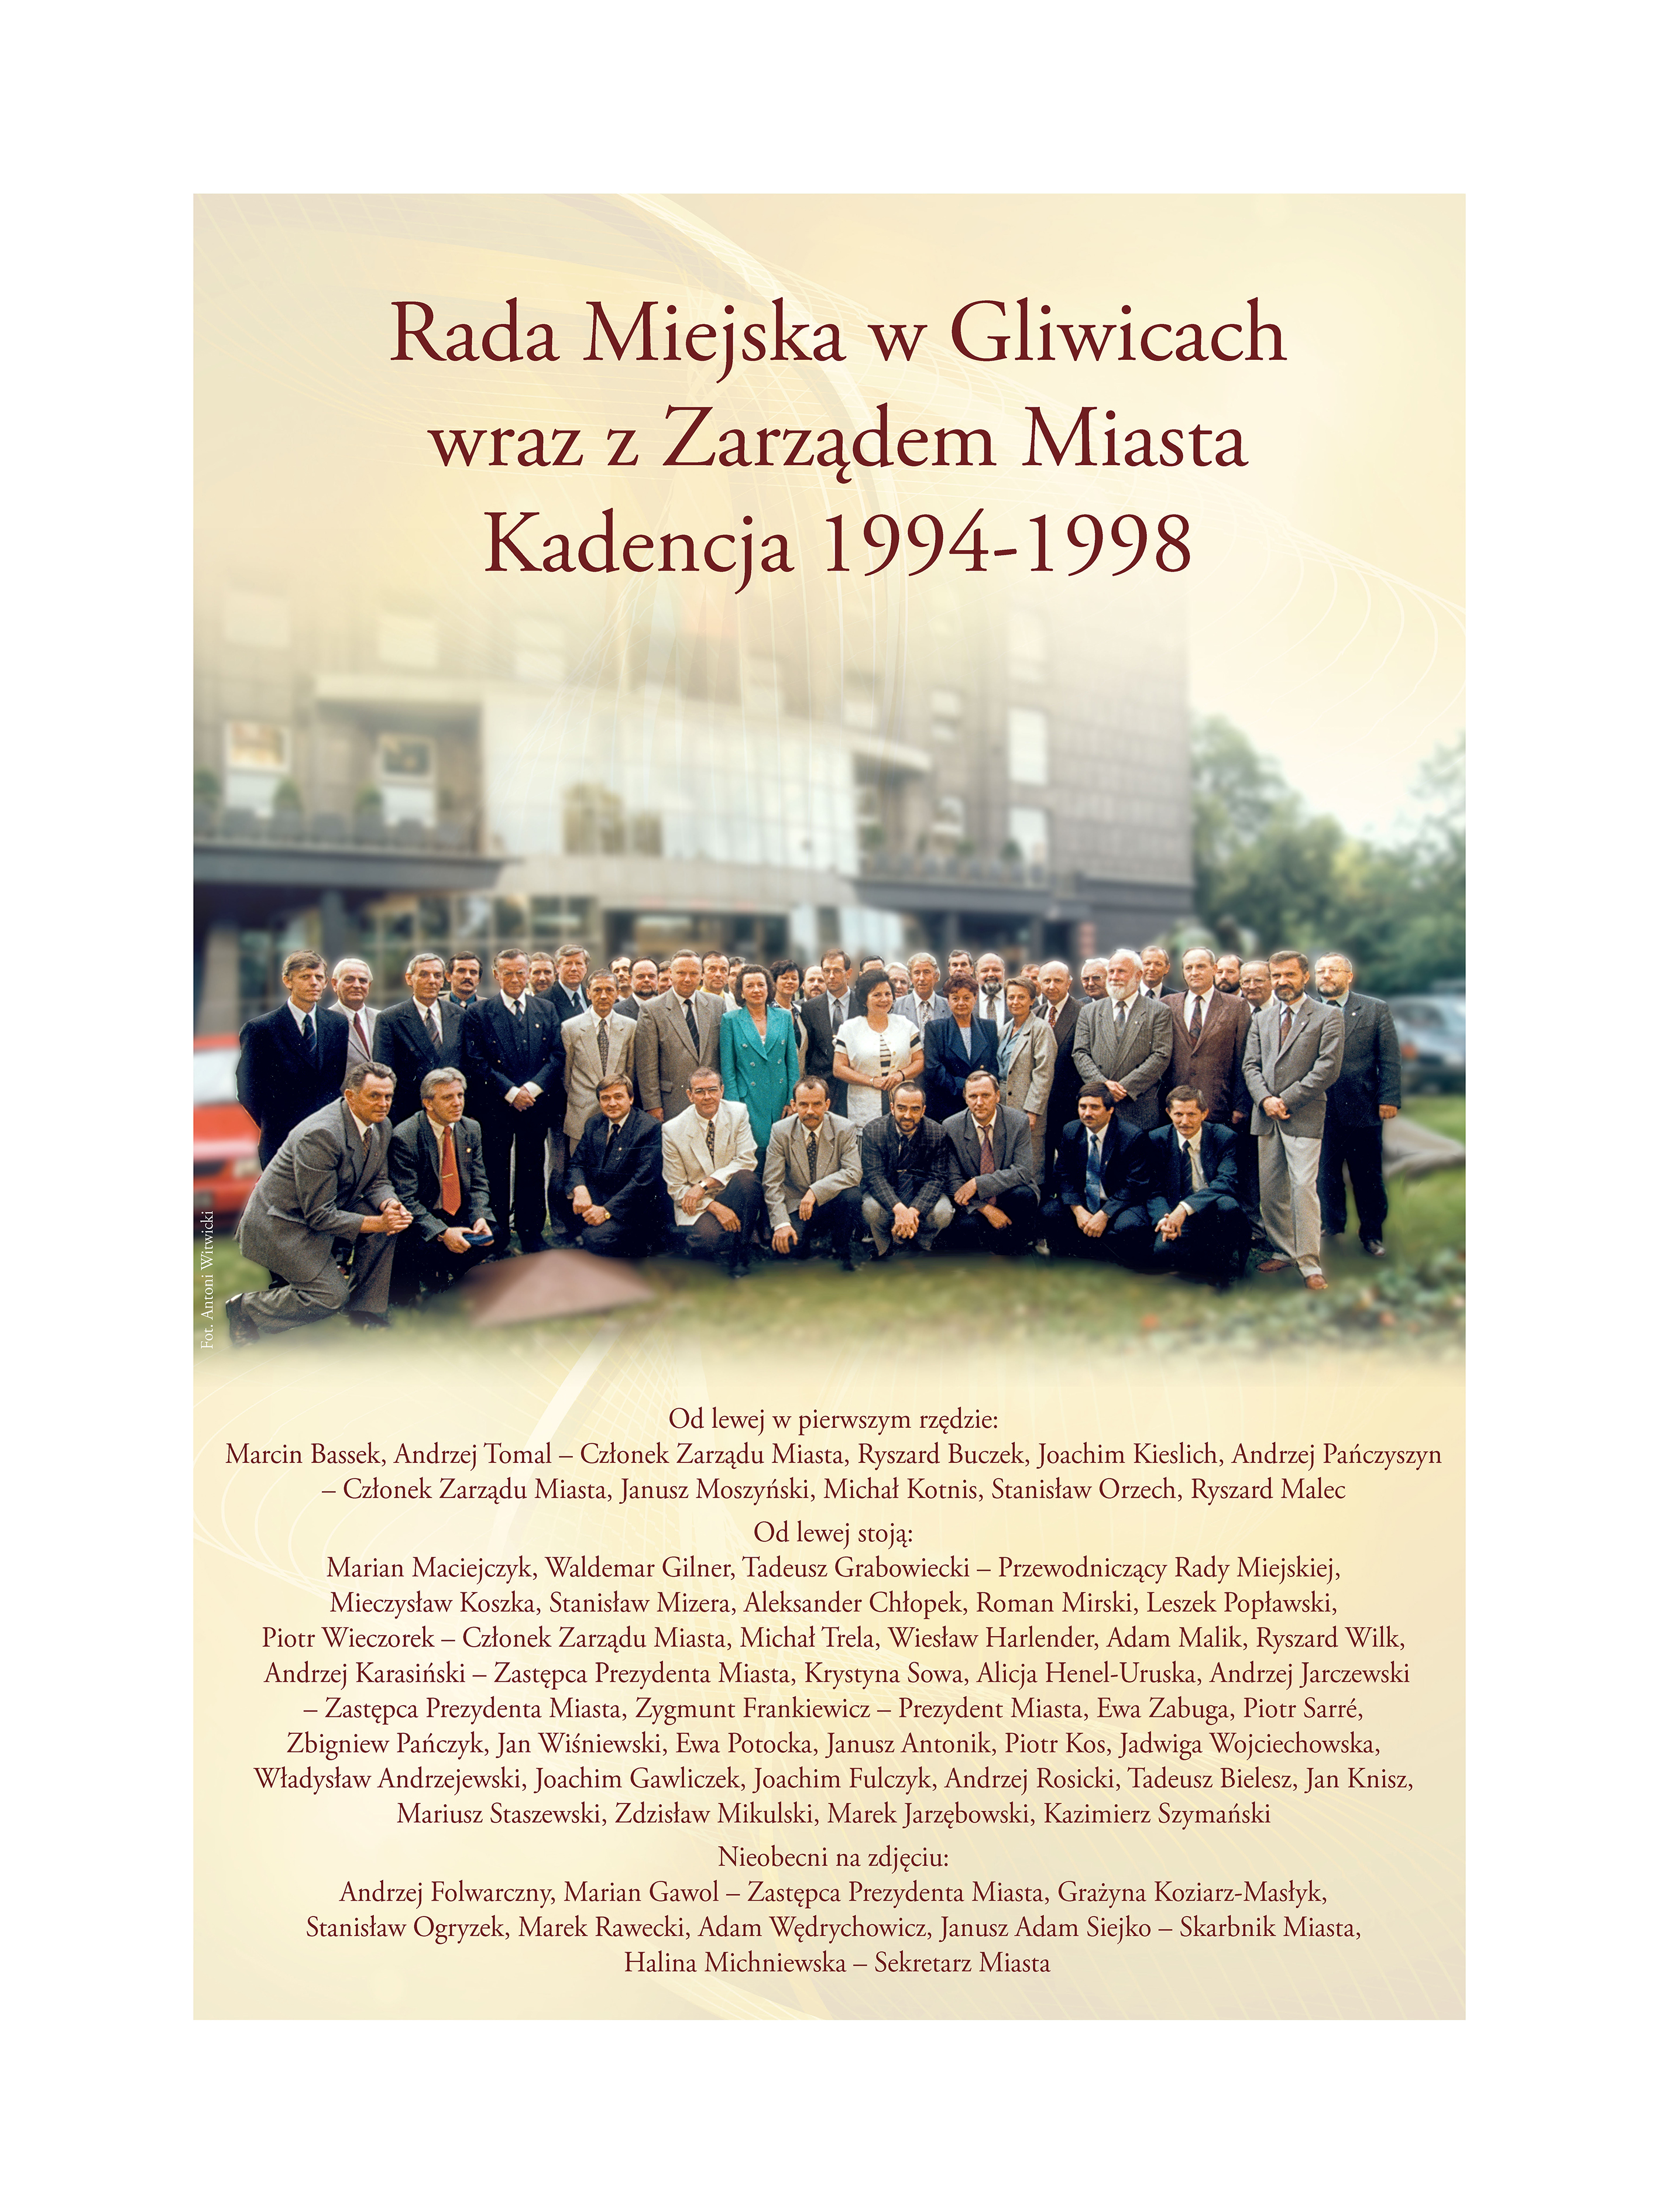 Zdjęcie Rady Miejskiej w Gliwicach wraz z Zarządem Miasta